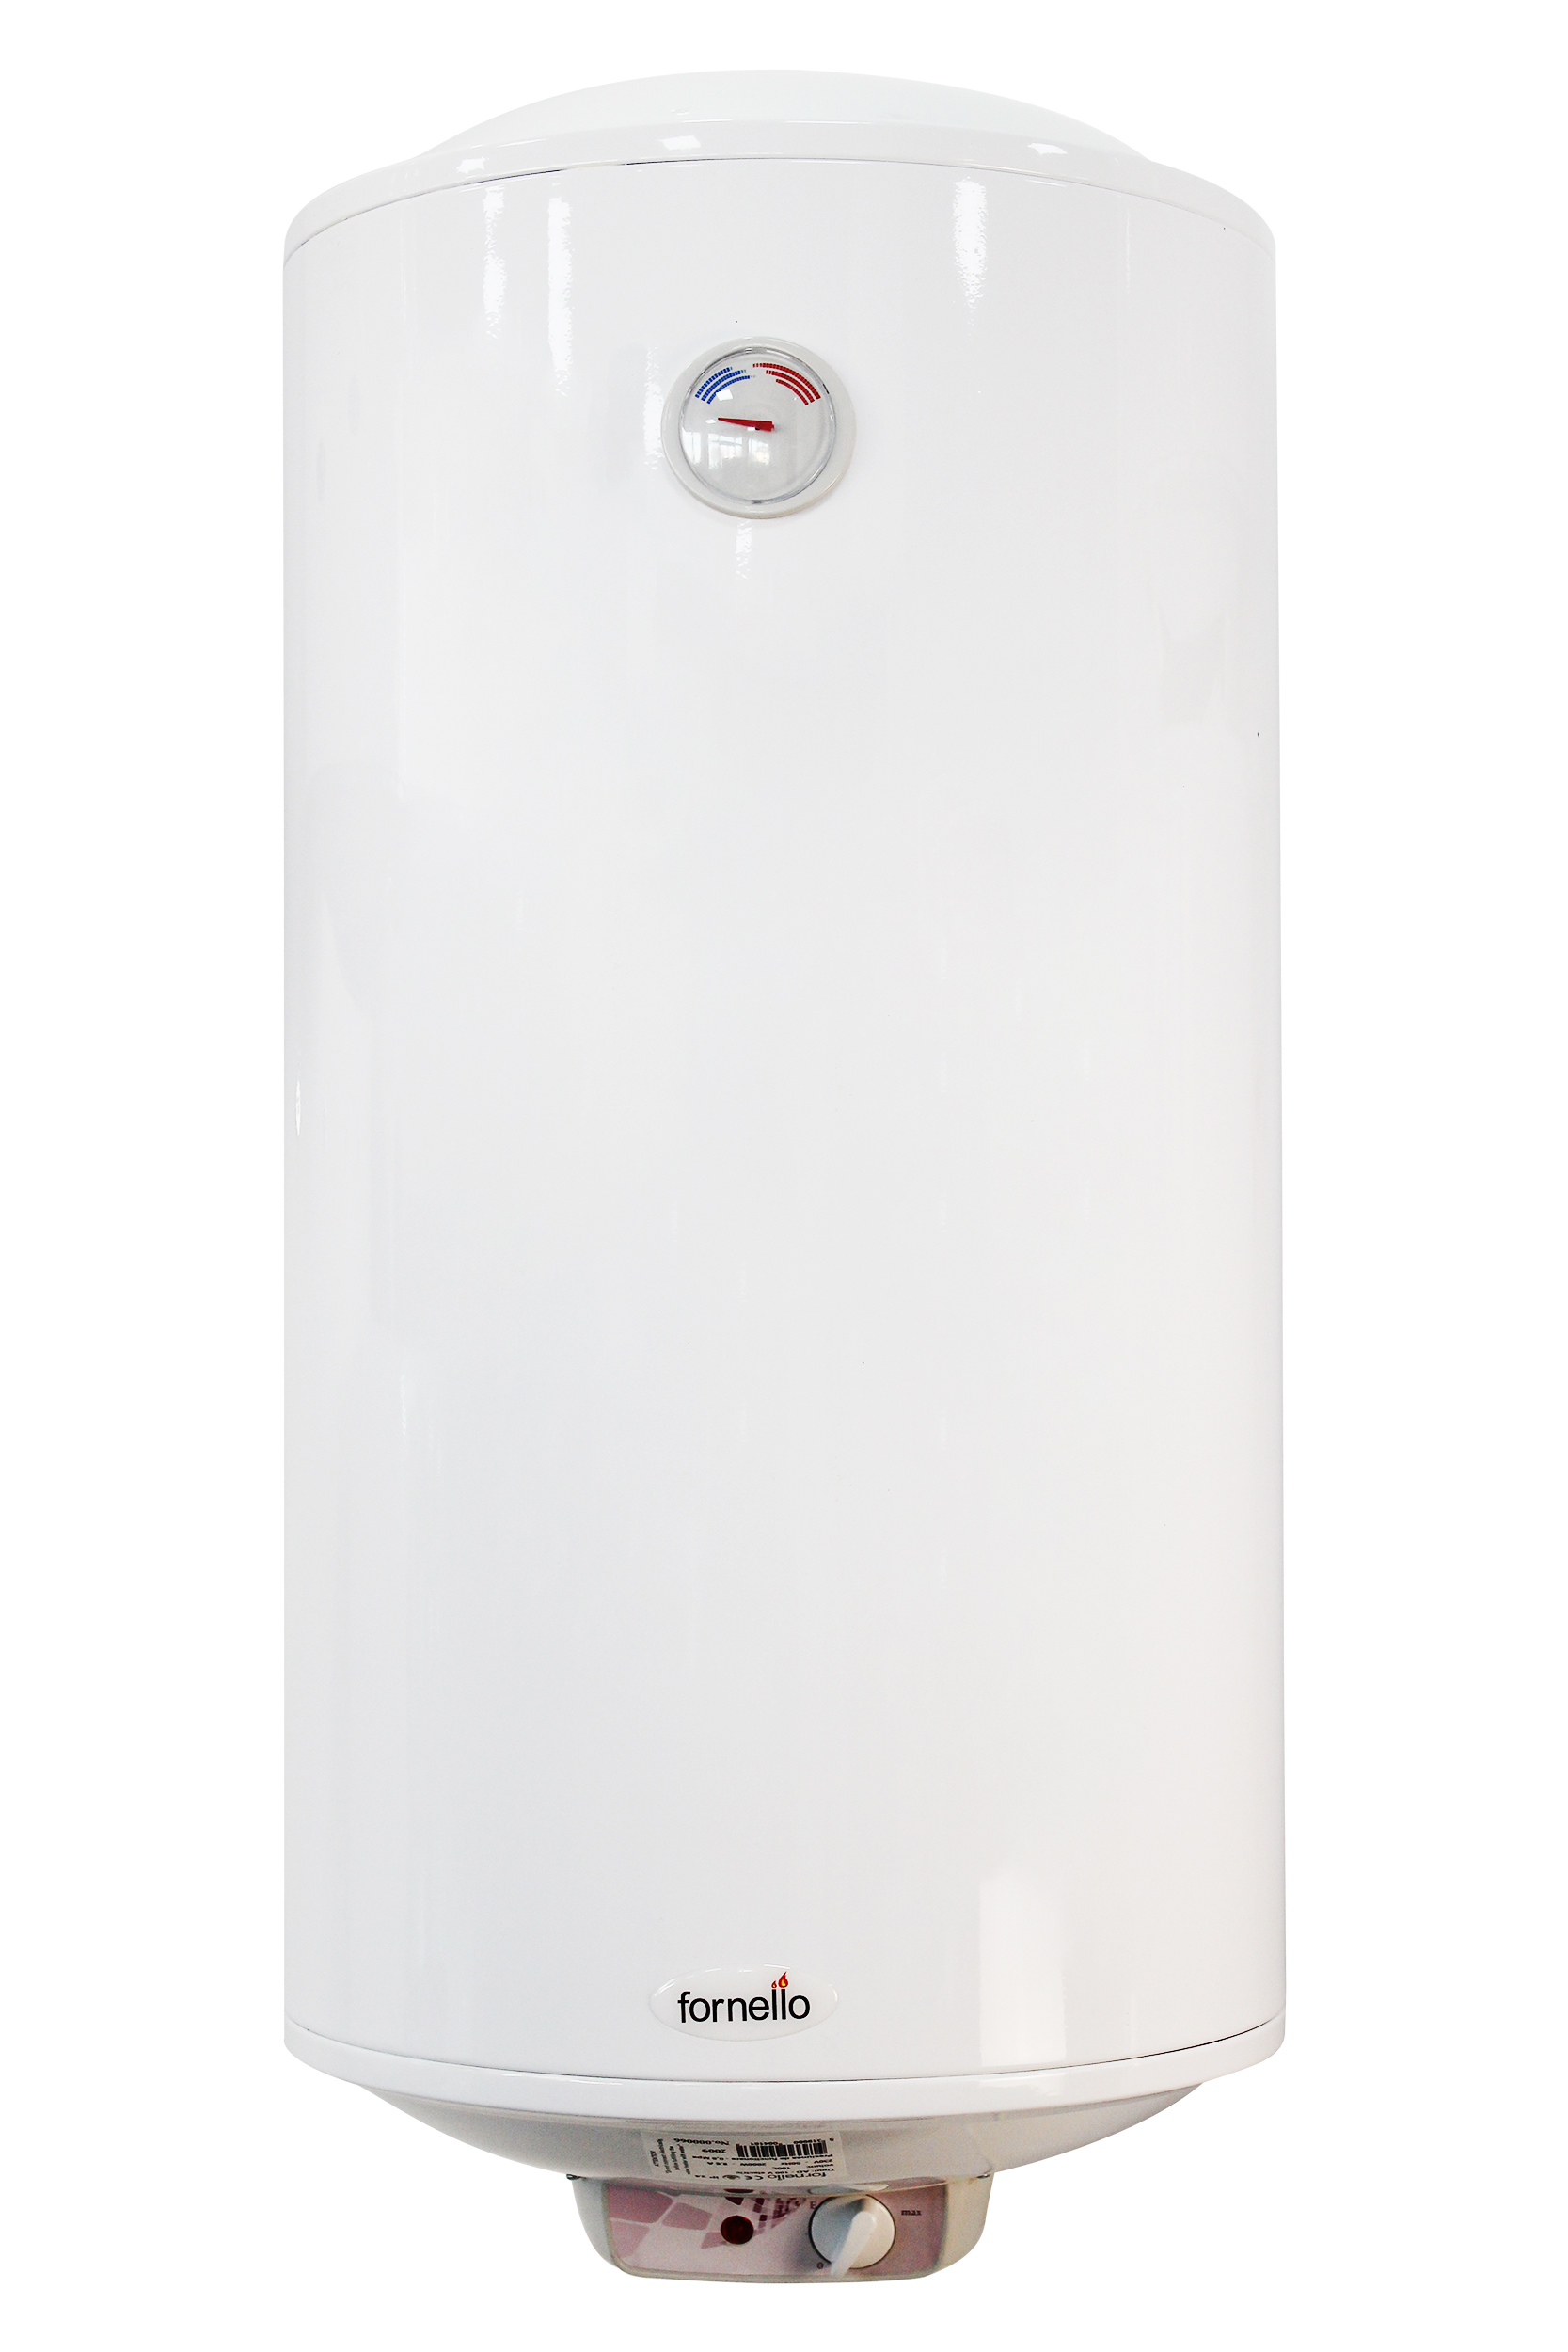 Boiler electric Fornello Titanium Plus 100 litri, 2000 watt, reglaj extern al temperaturii, emailat cu titan Fornello imagine 2022